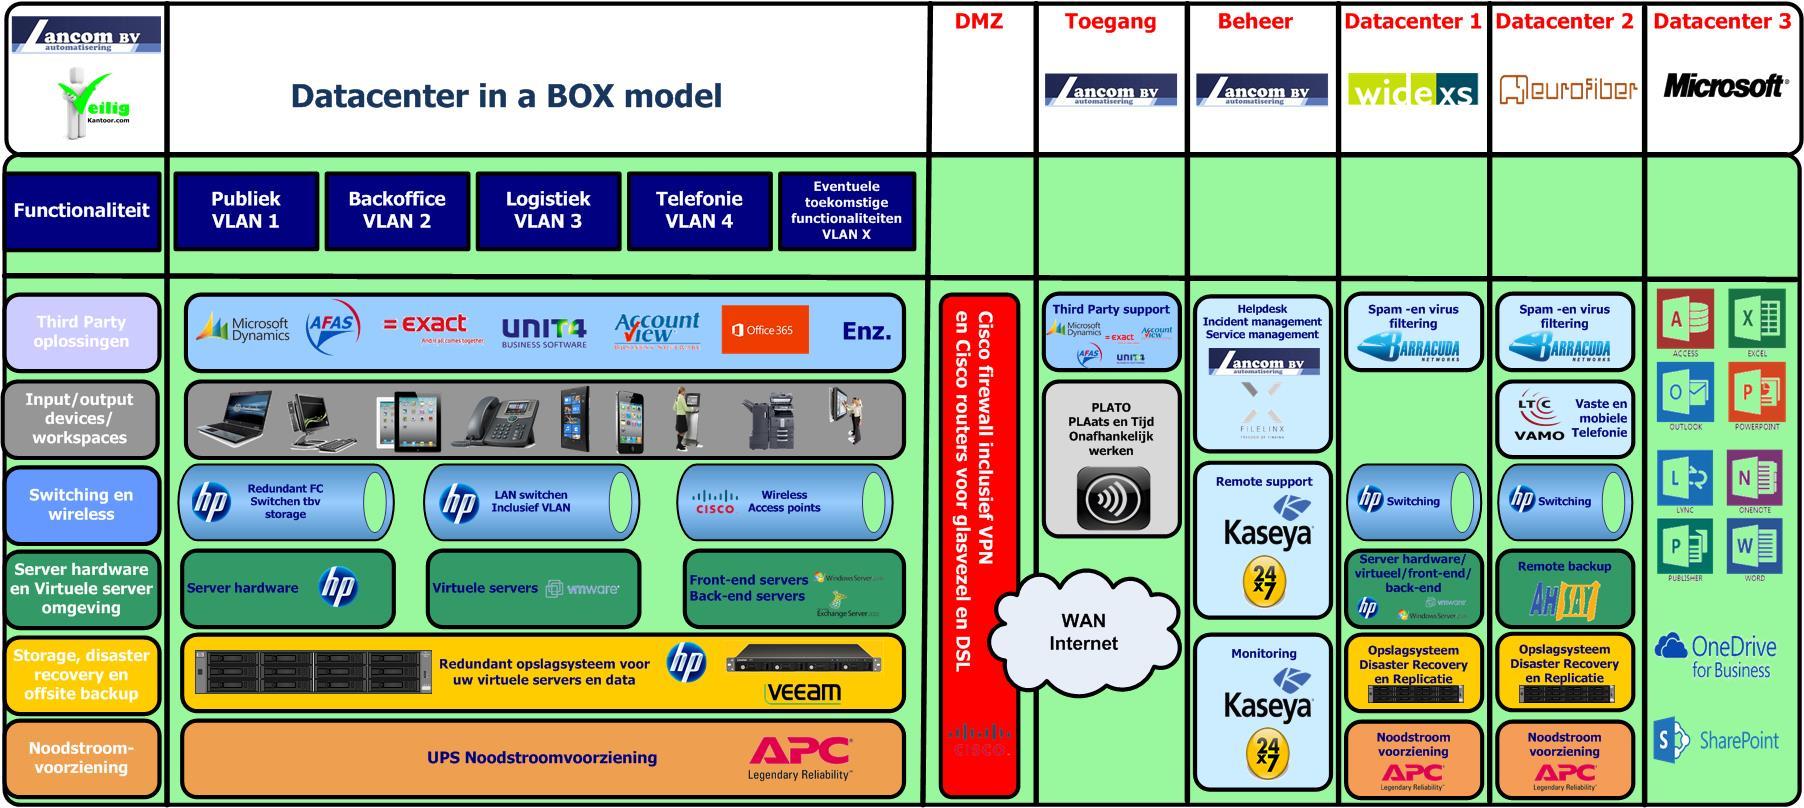 1 Dienstbeschrijving Datacenter in a BOX Lancom Automatisering heeft jarenlang ervaring opgedaan in het ontwerpen, implementeren en beheren van ICT infrastructuren bij het MKB (+).